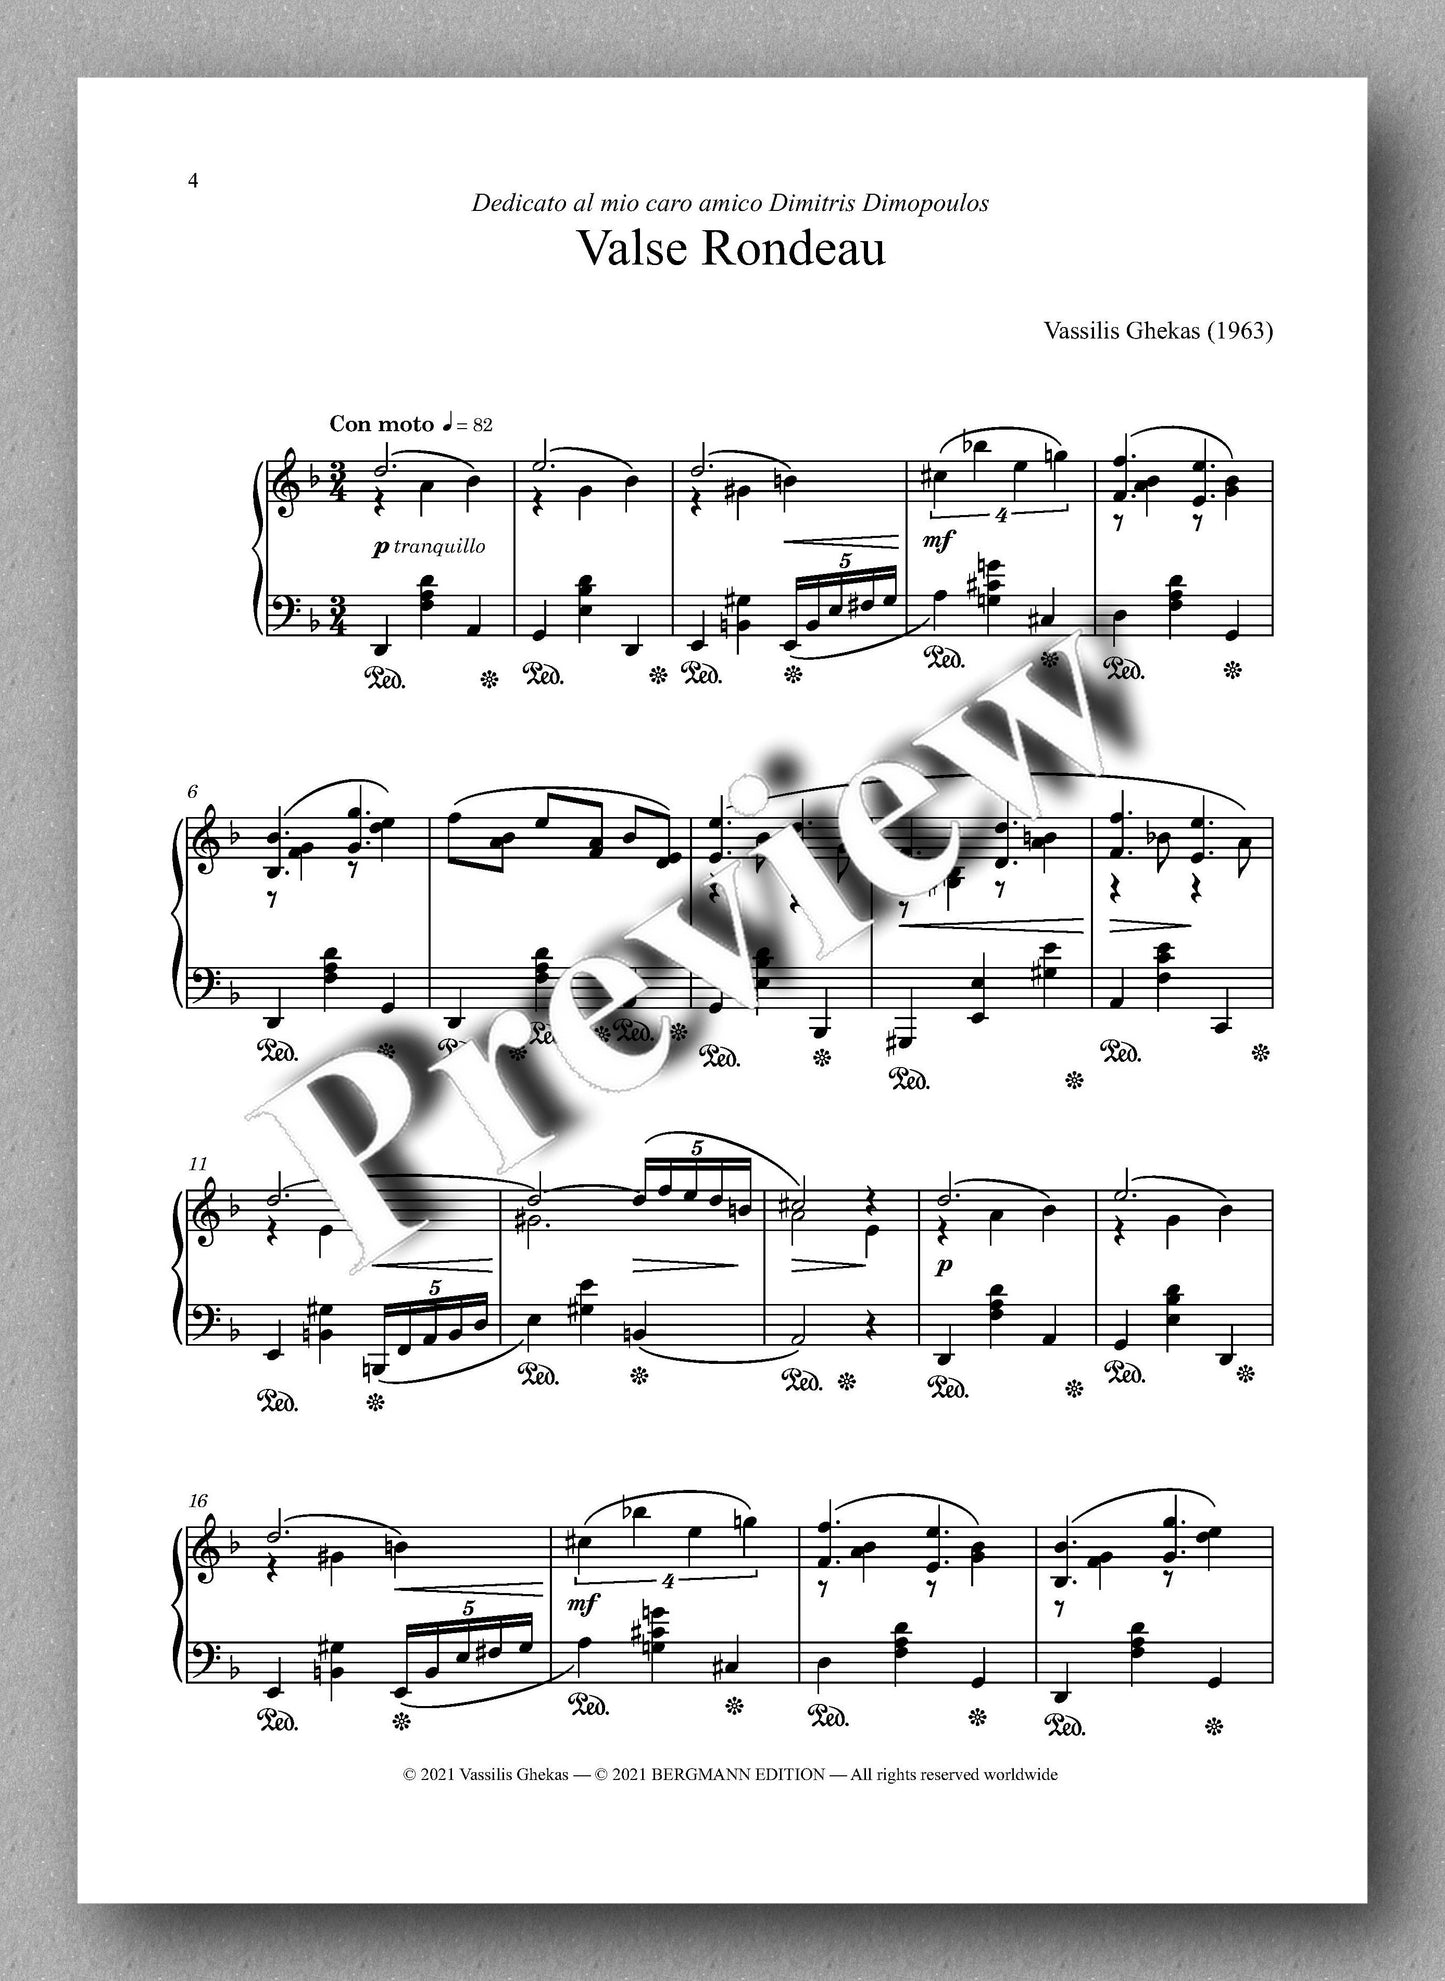 Valse Rondeau by Vassilis Ghekas - Music score 1